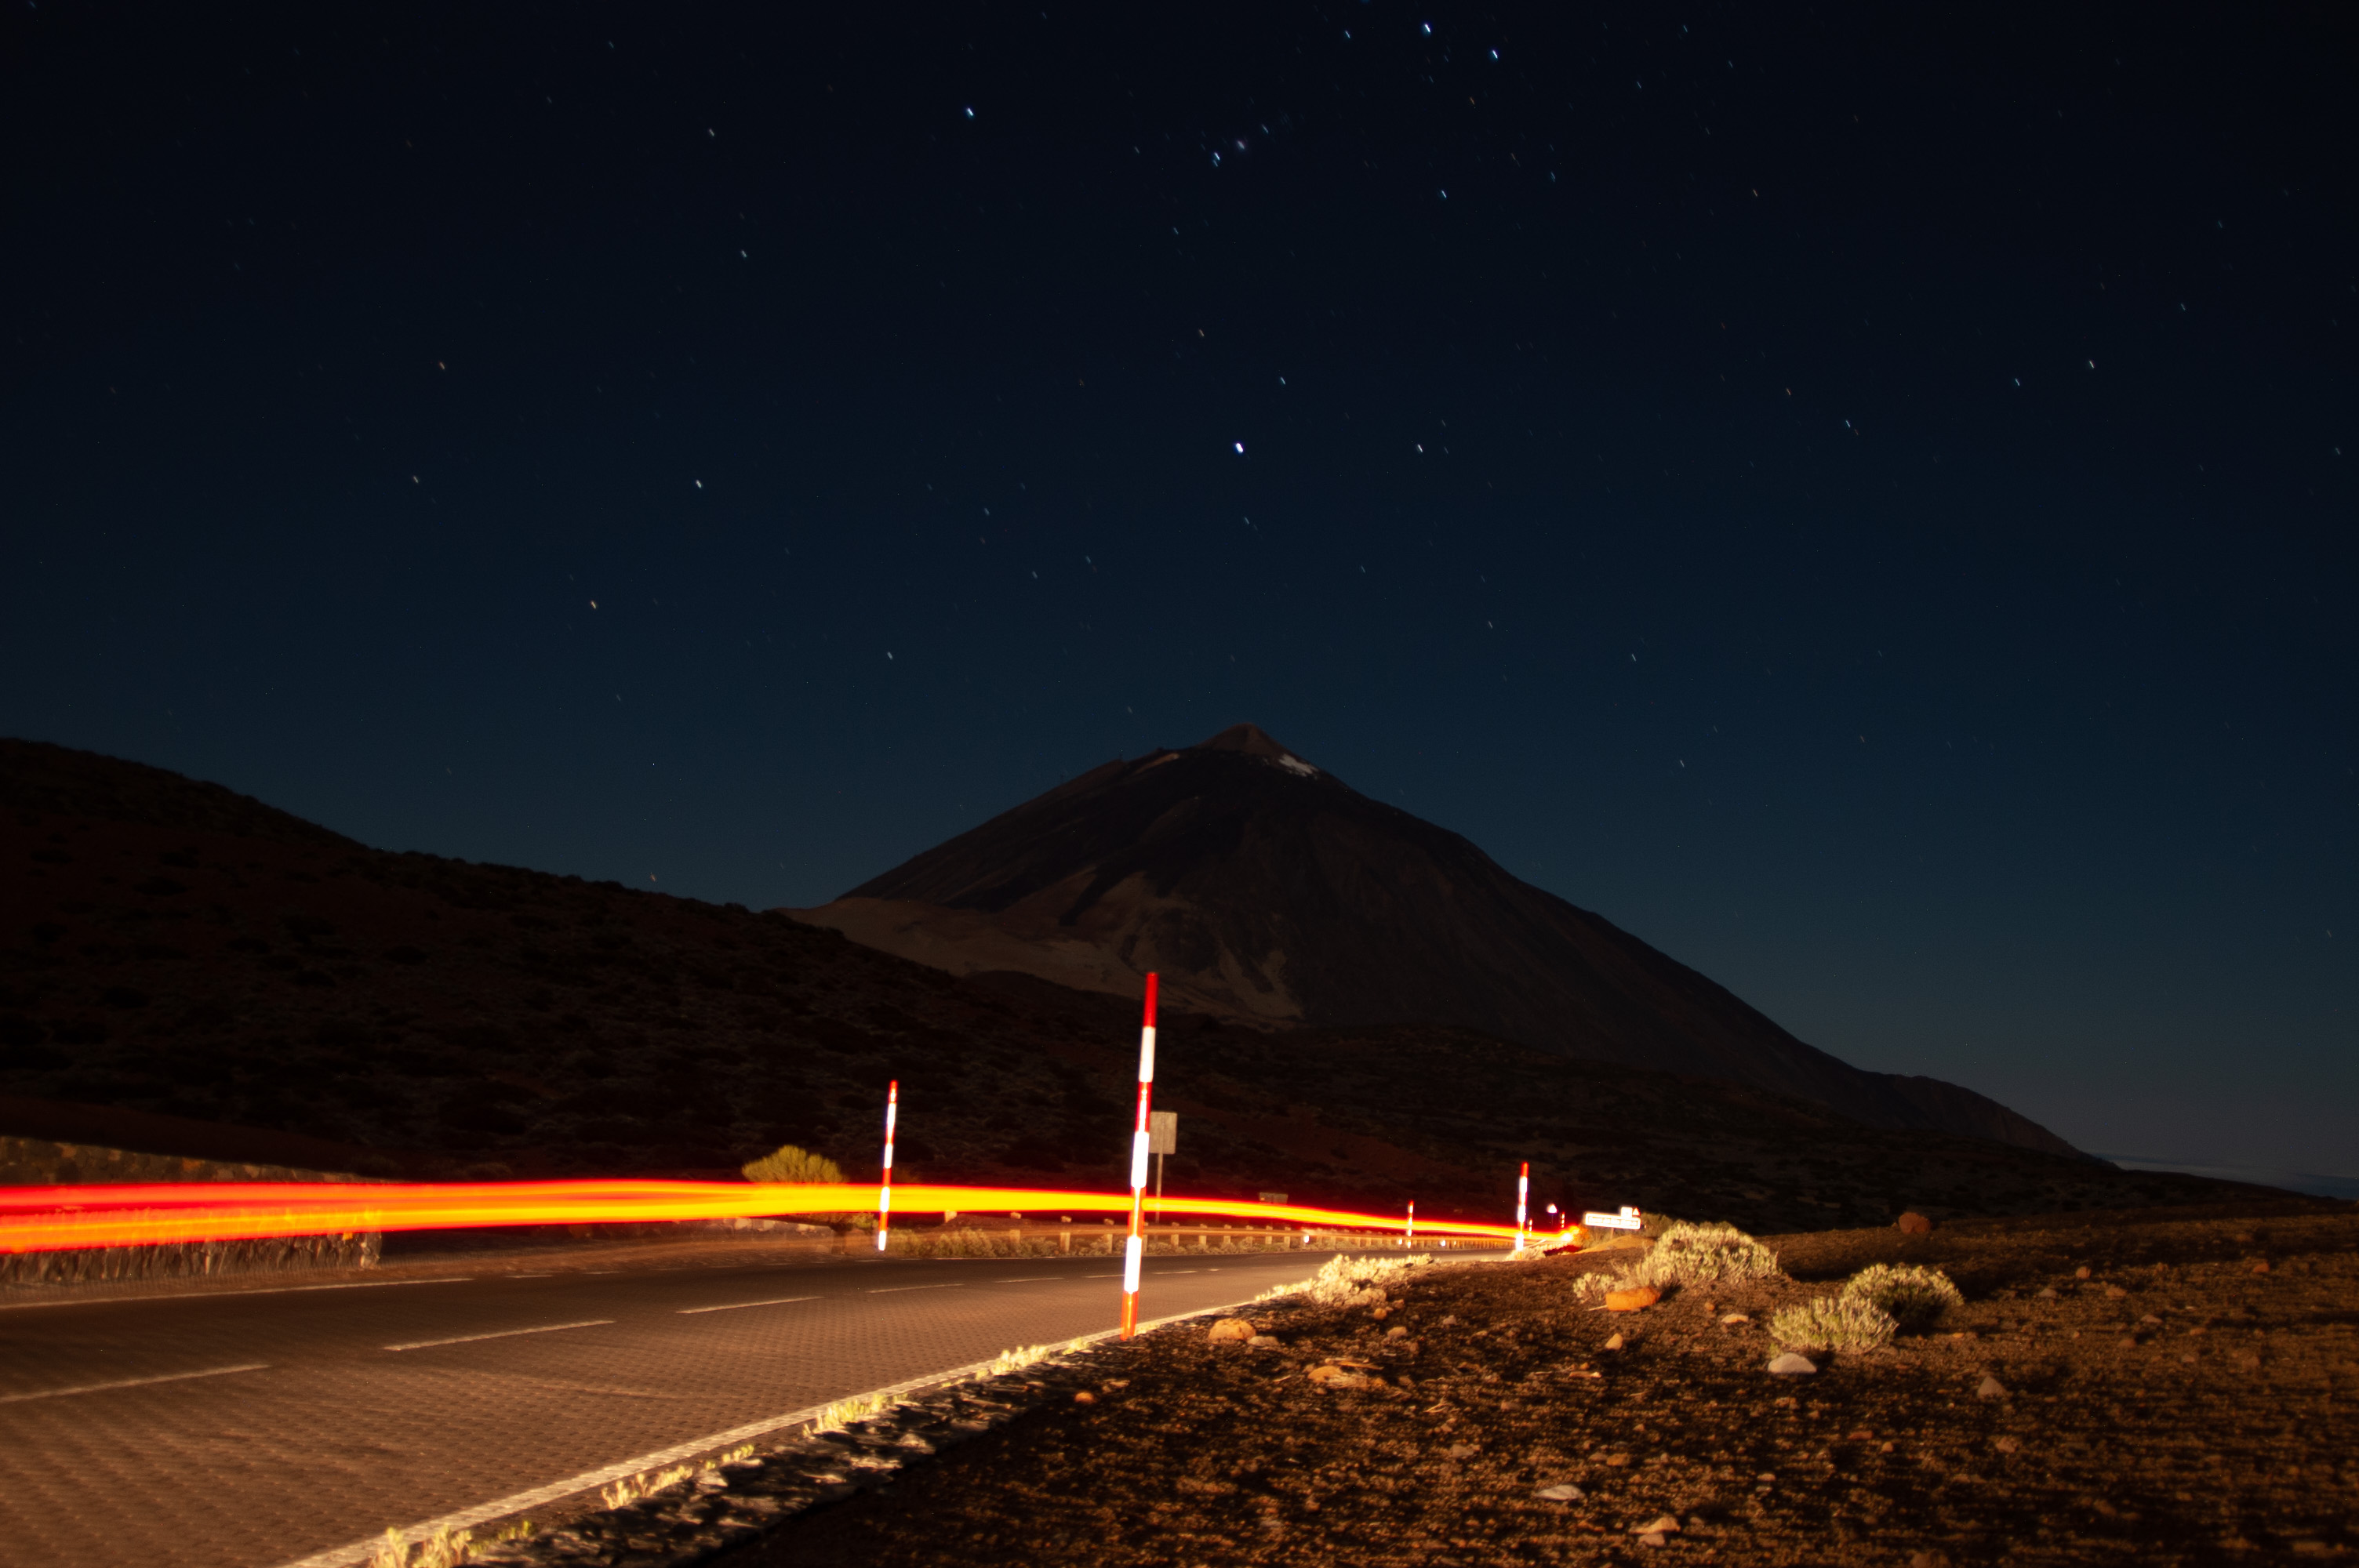 A Teide nevű vulkán, és az előtte elhaladó autó fénycsíkja